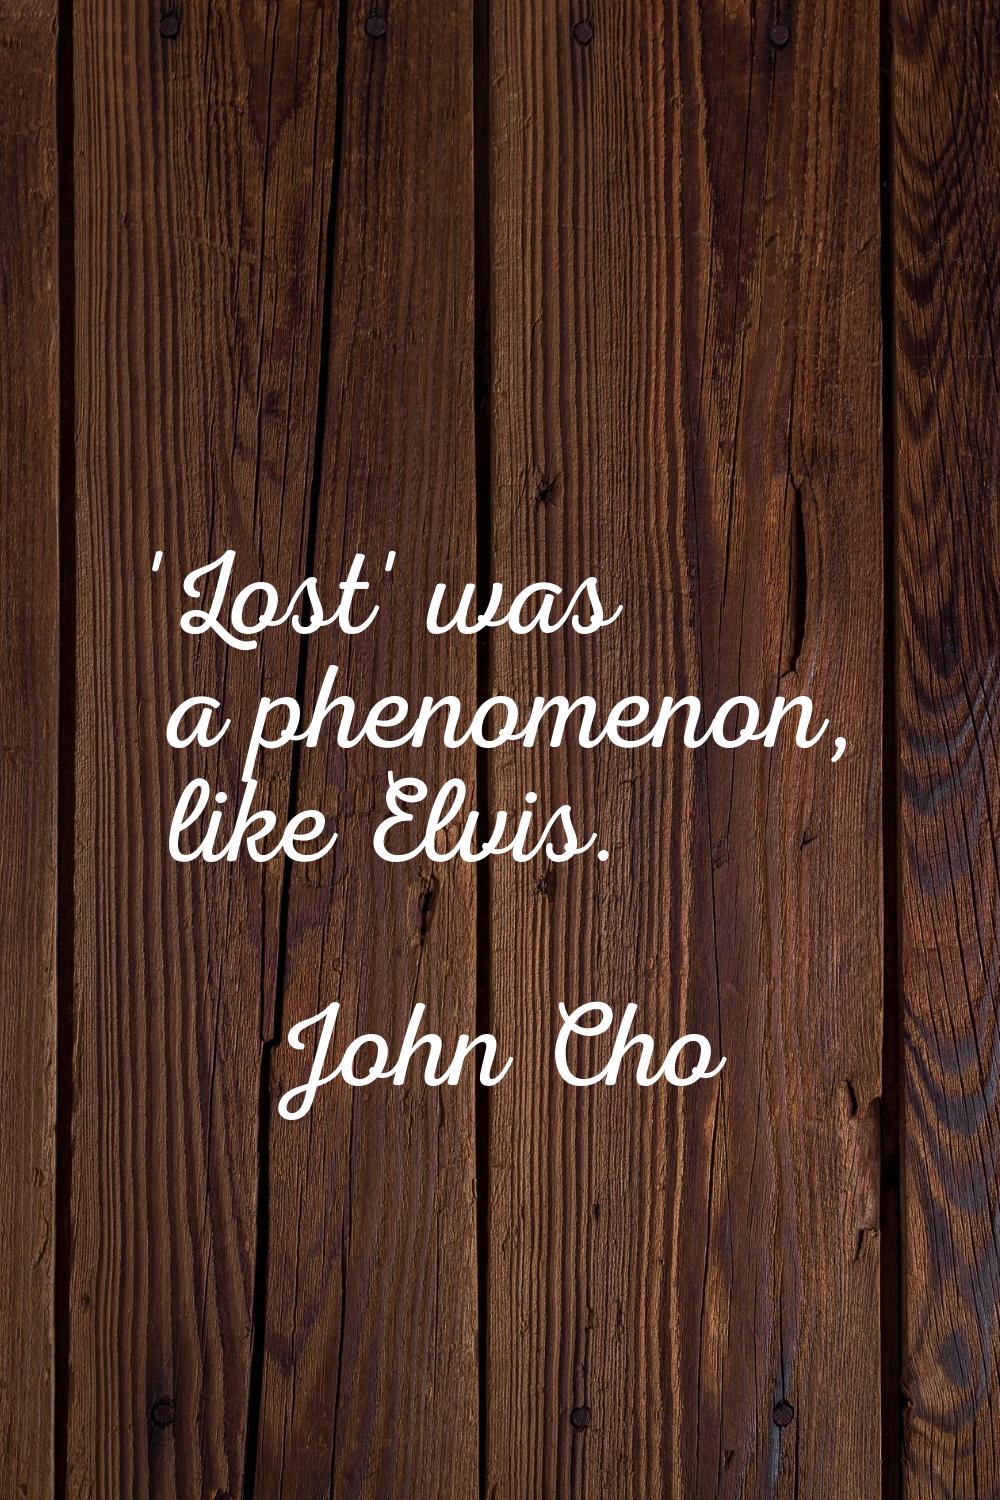 'Lost' was a phenomenon, like Elvis.